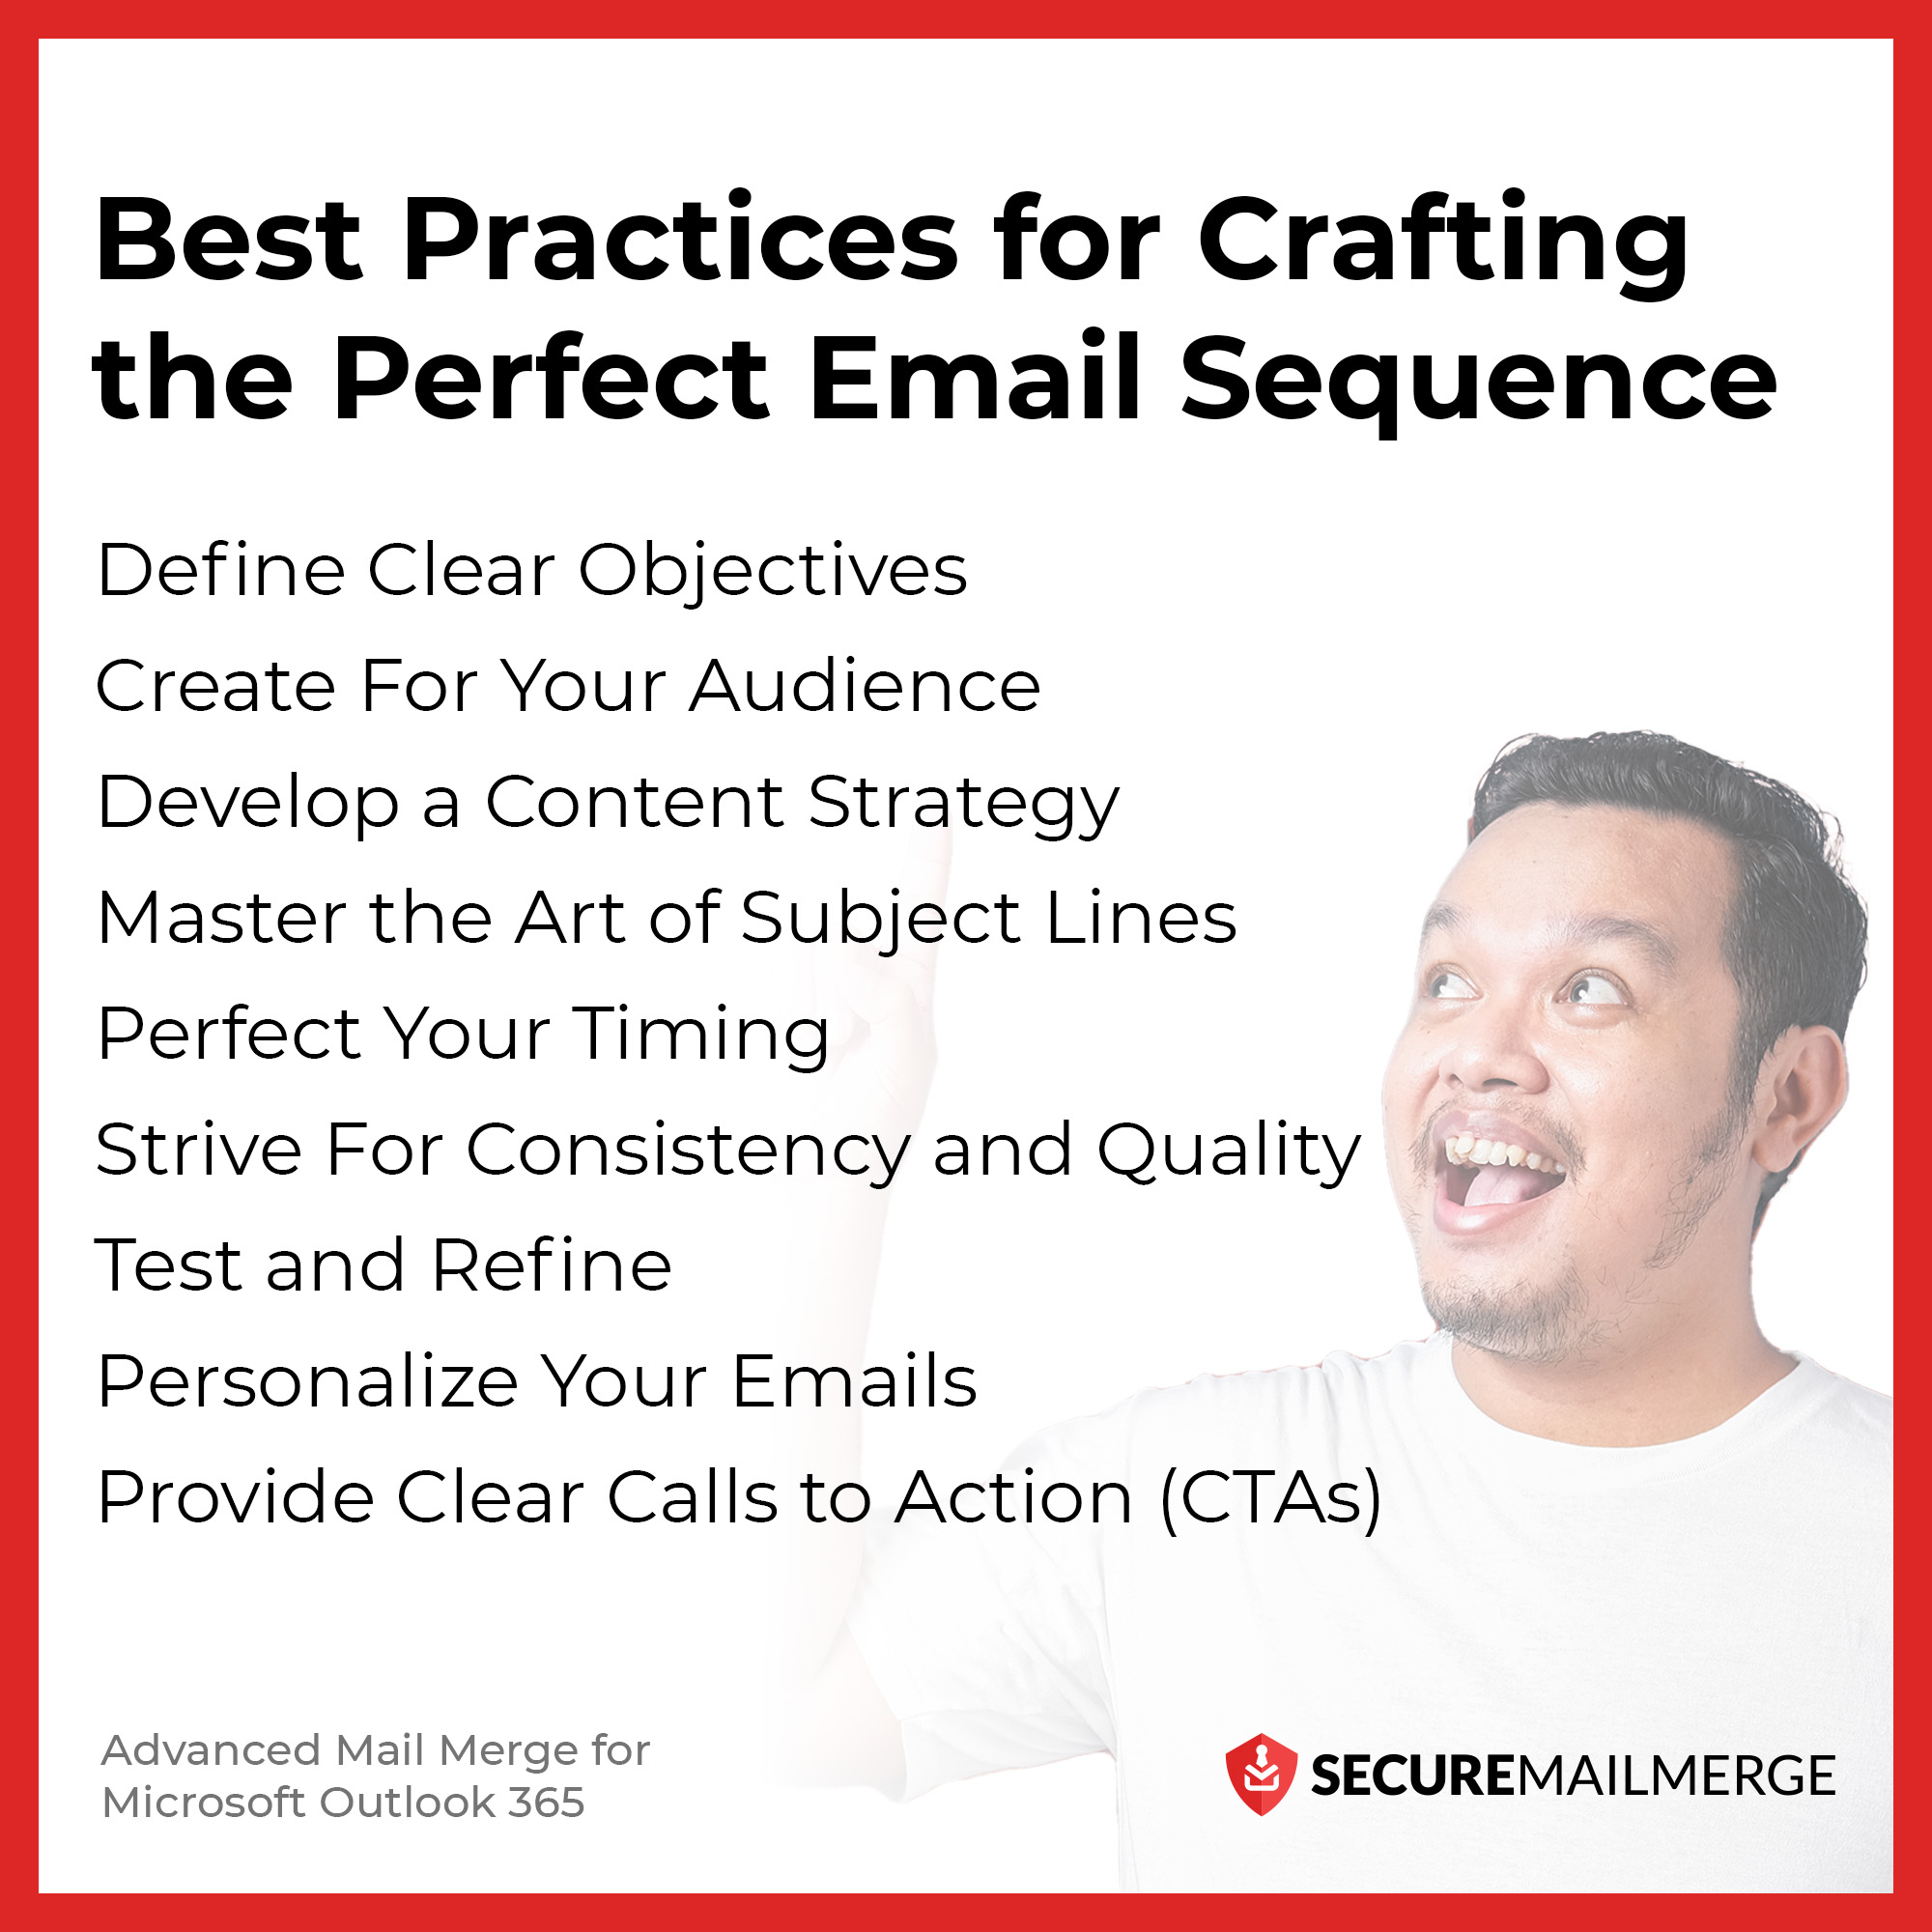 Best Practices für die Erstellung der perfekten E-Mail-Sequenz